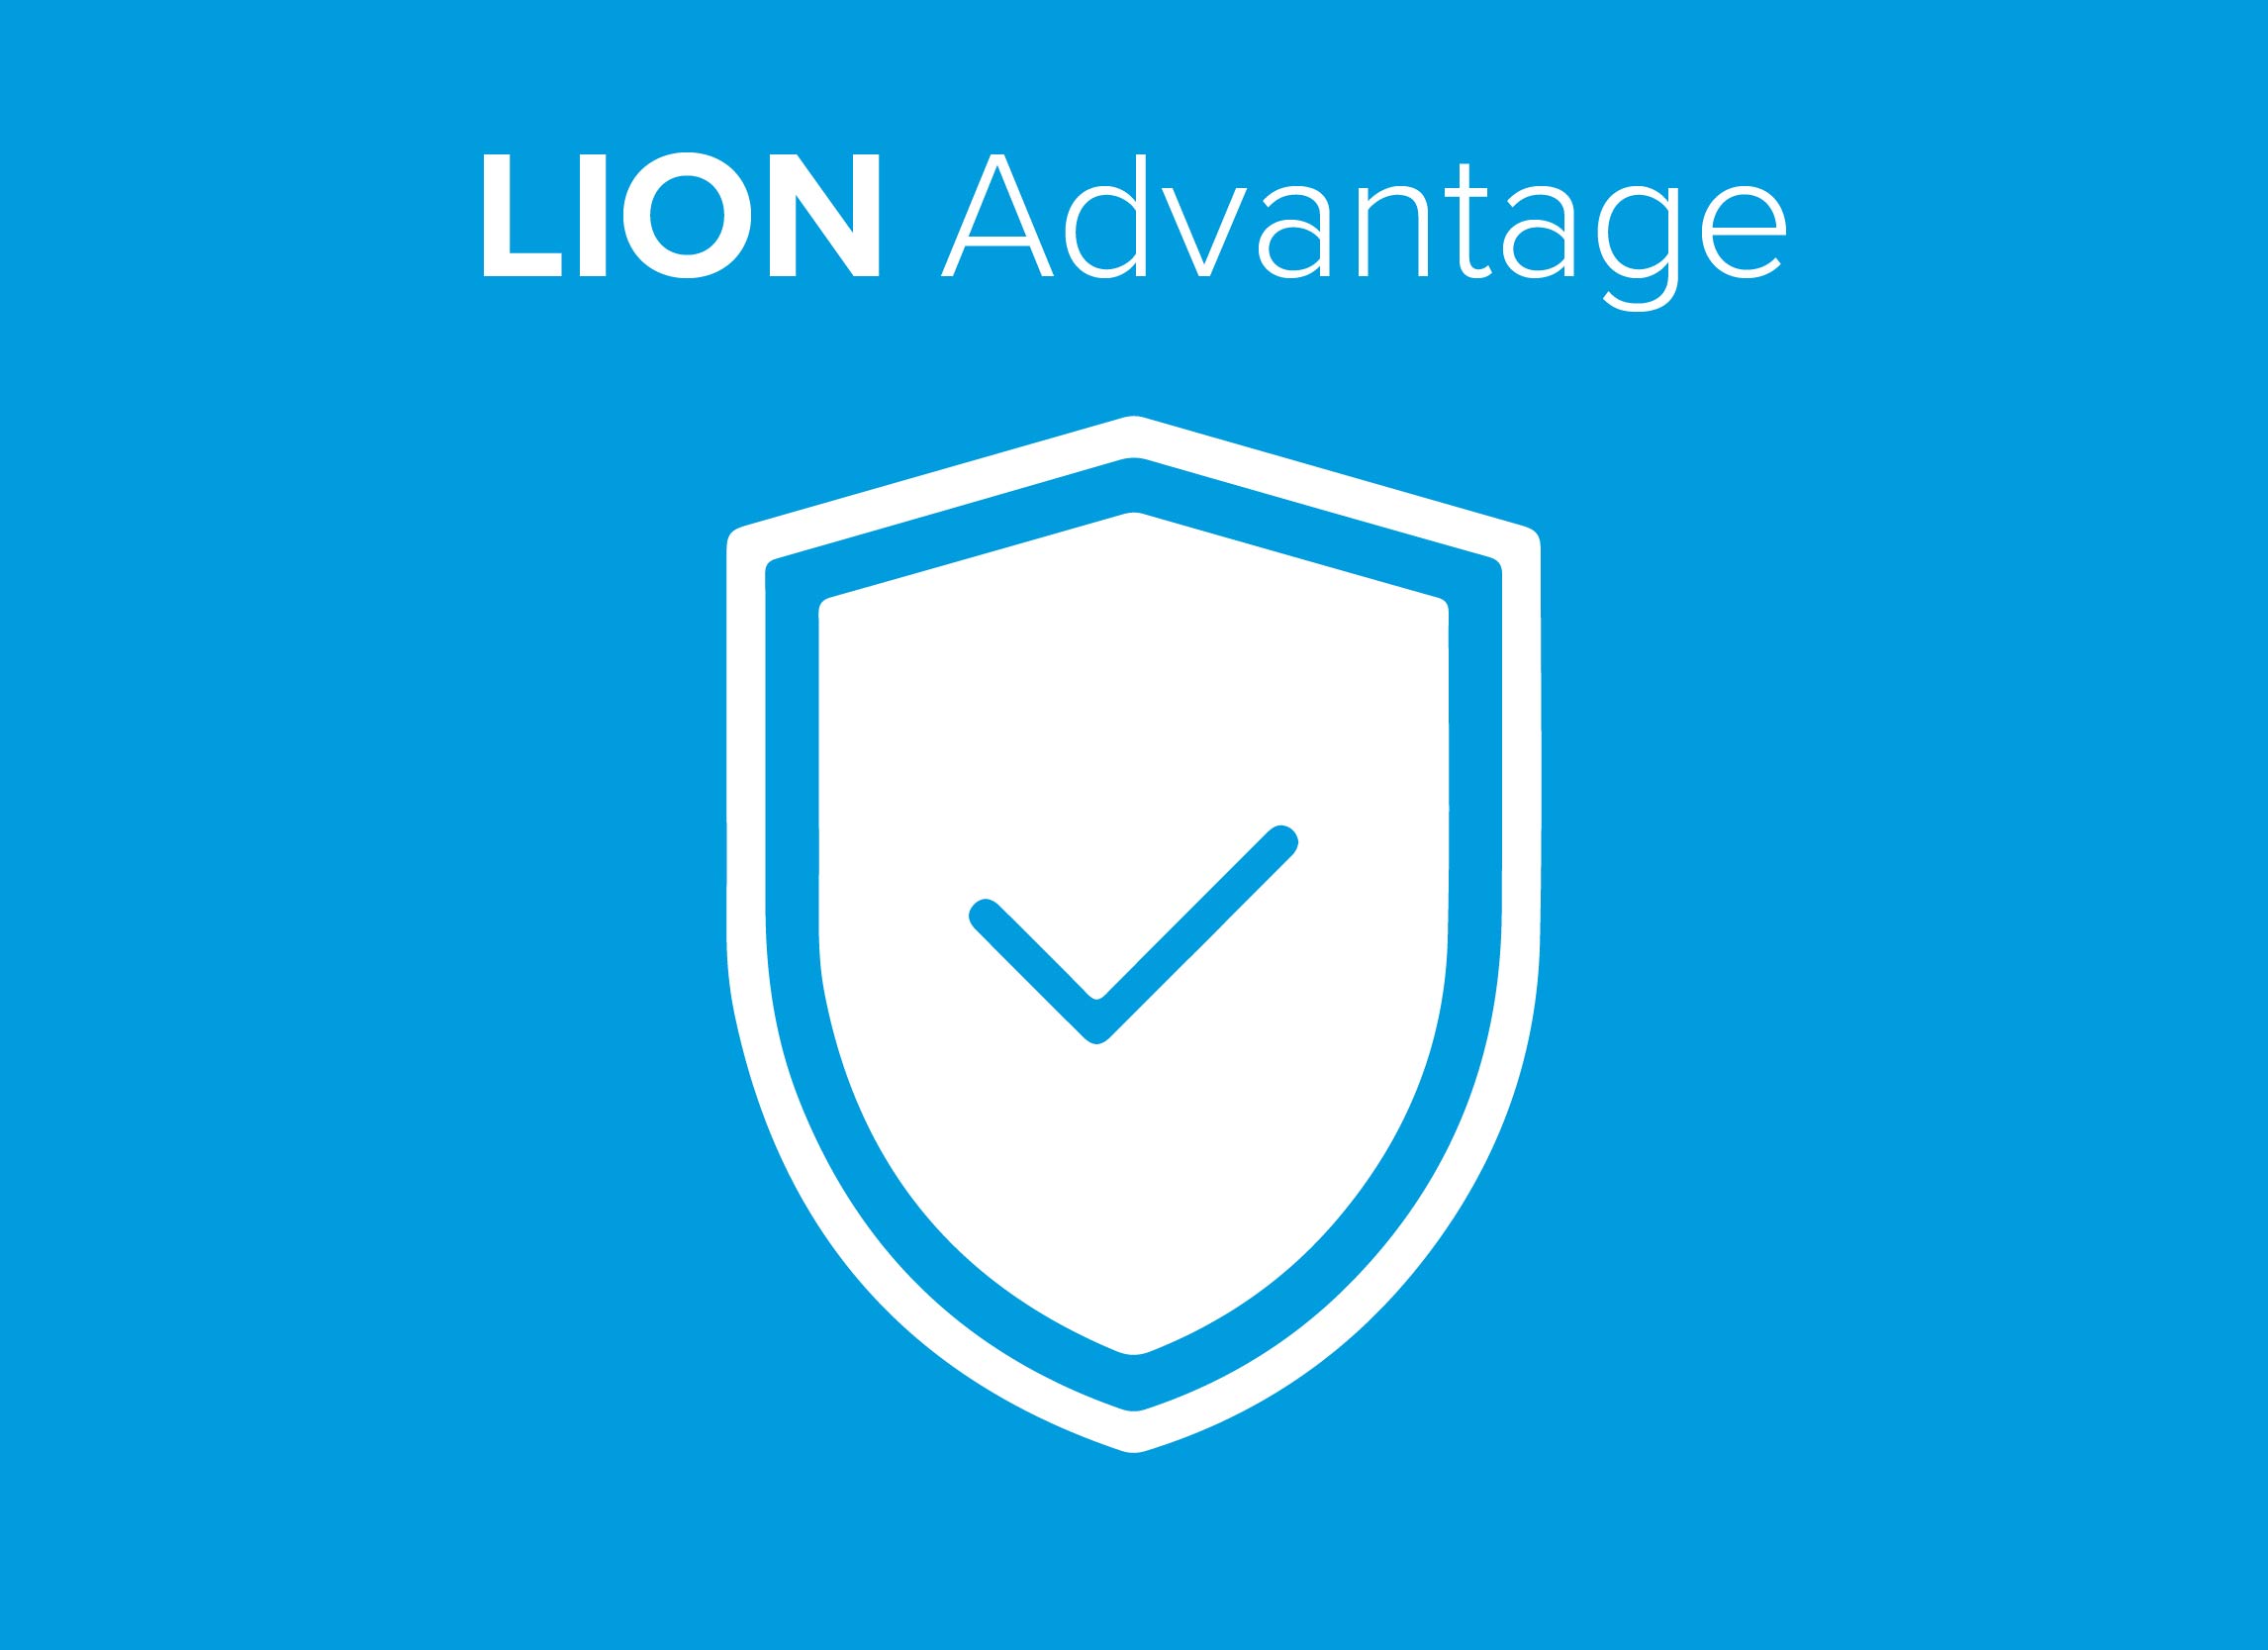 Lion Advantage Plan